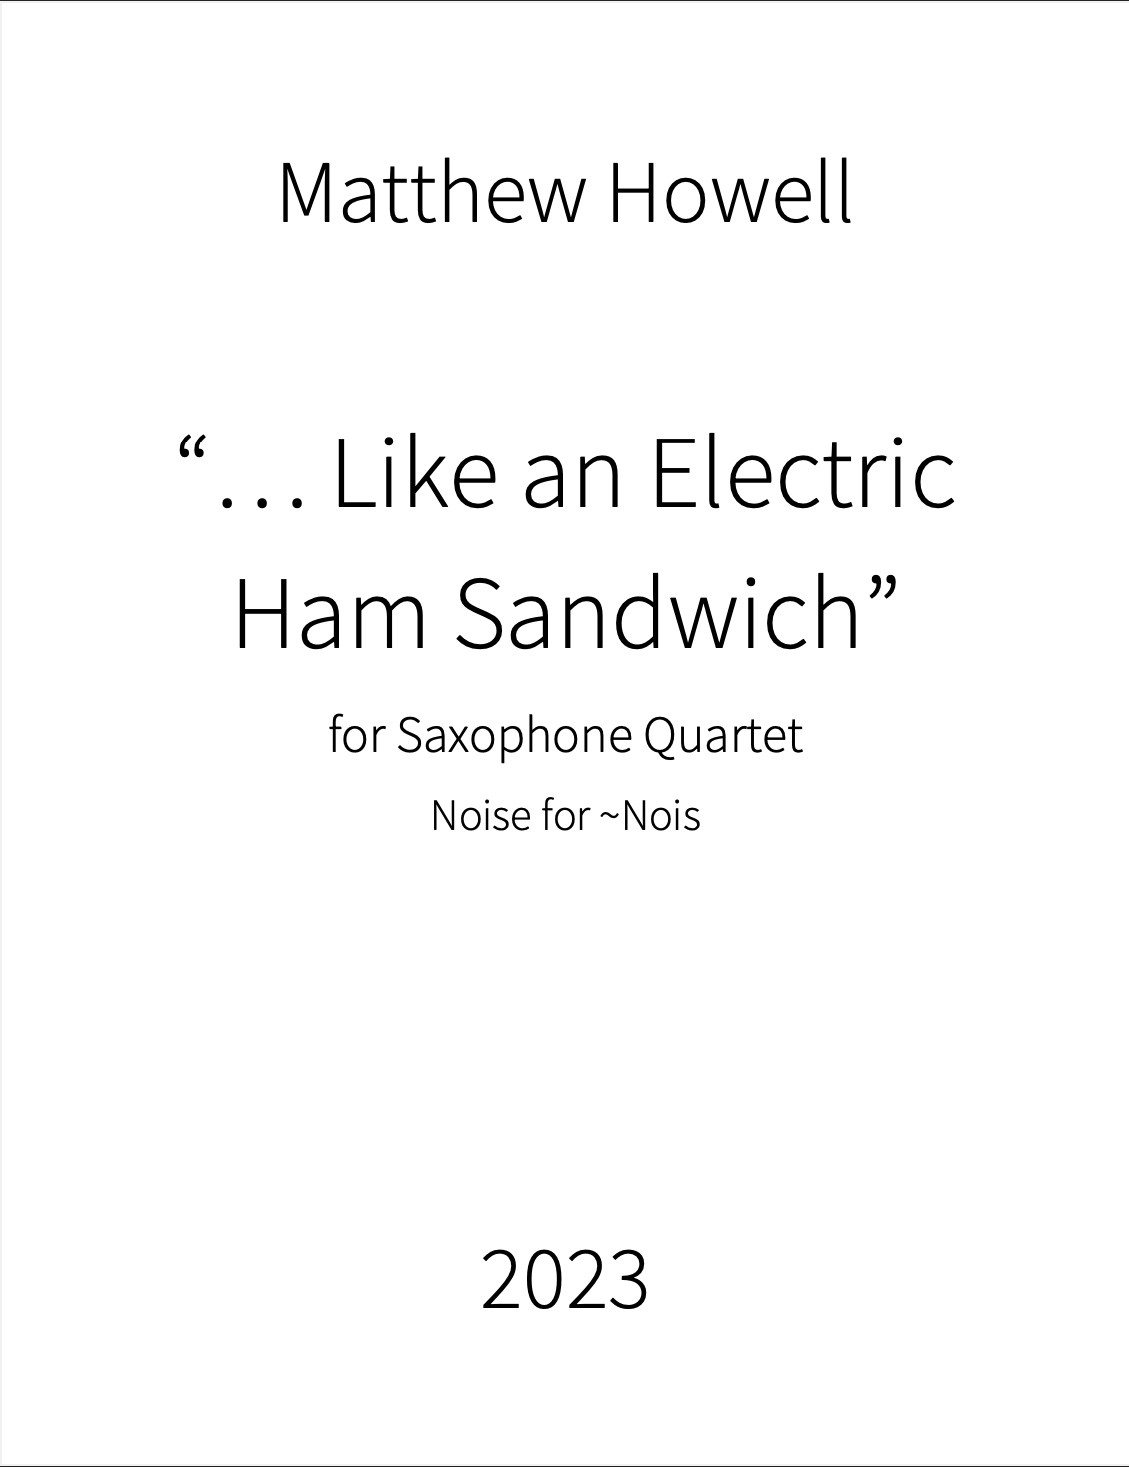 ...Like An Electric Ham Sandwich by Matthew Howell